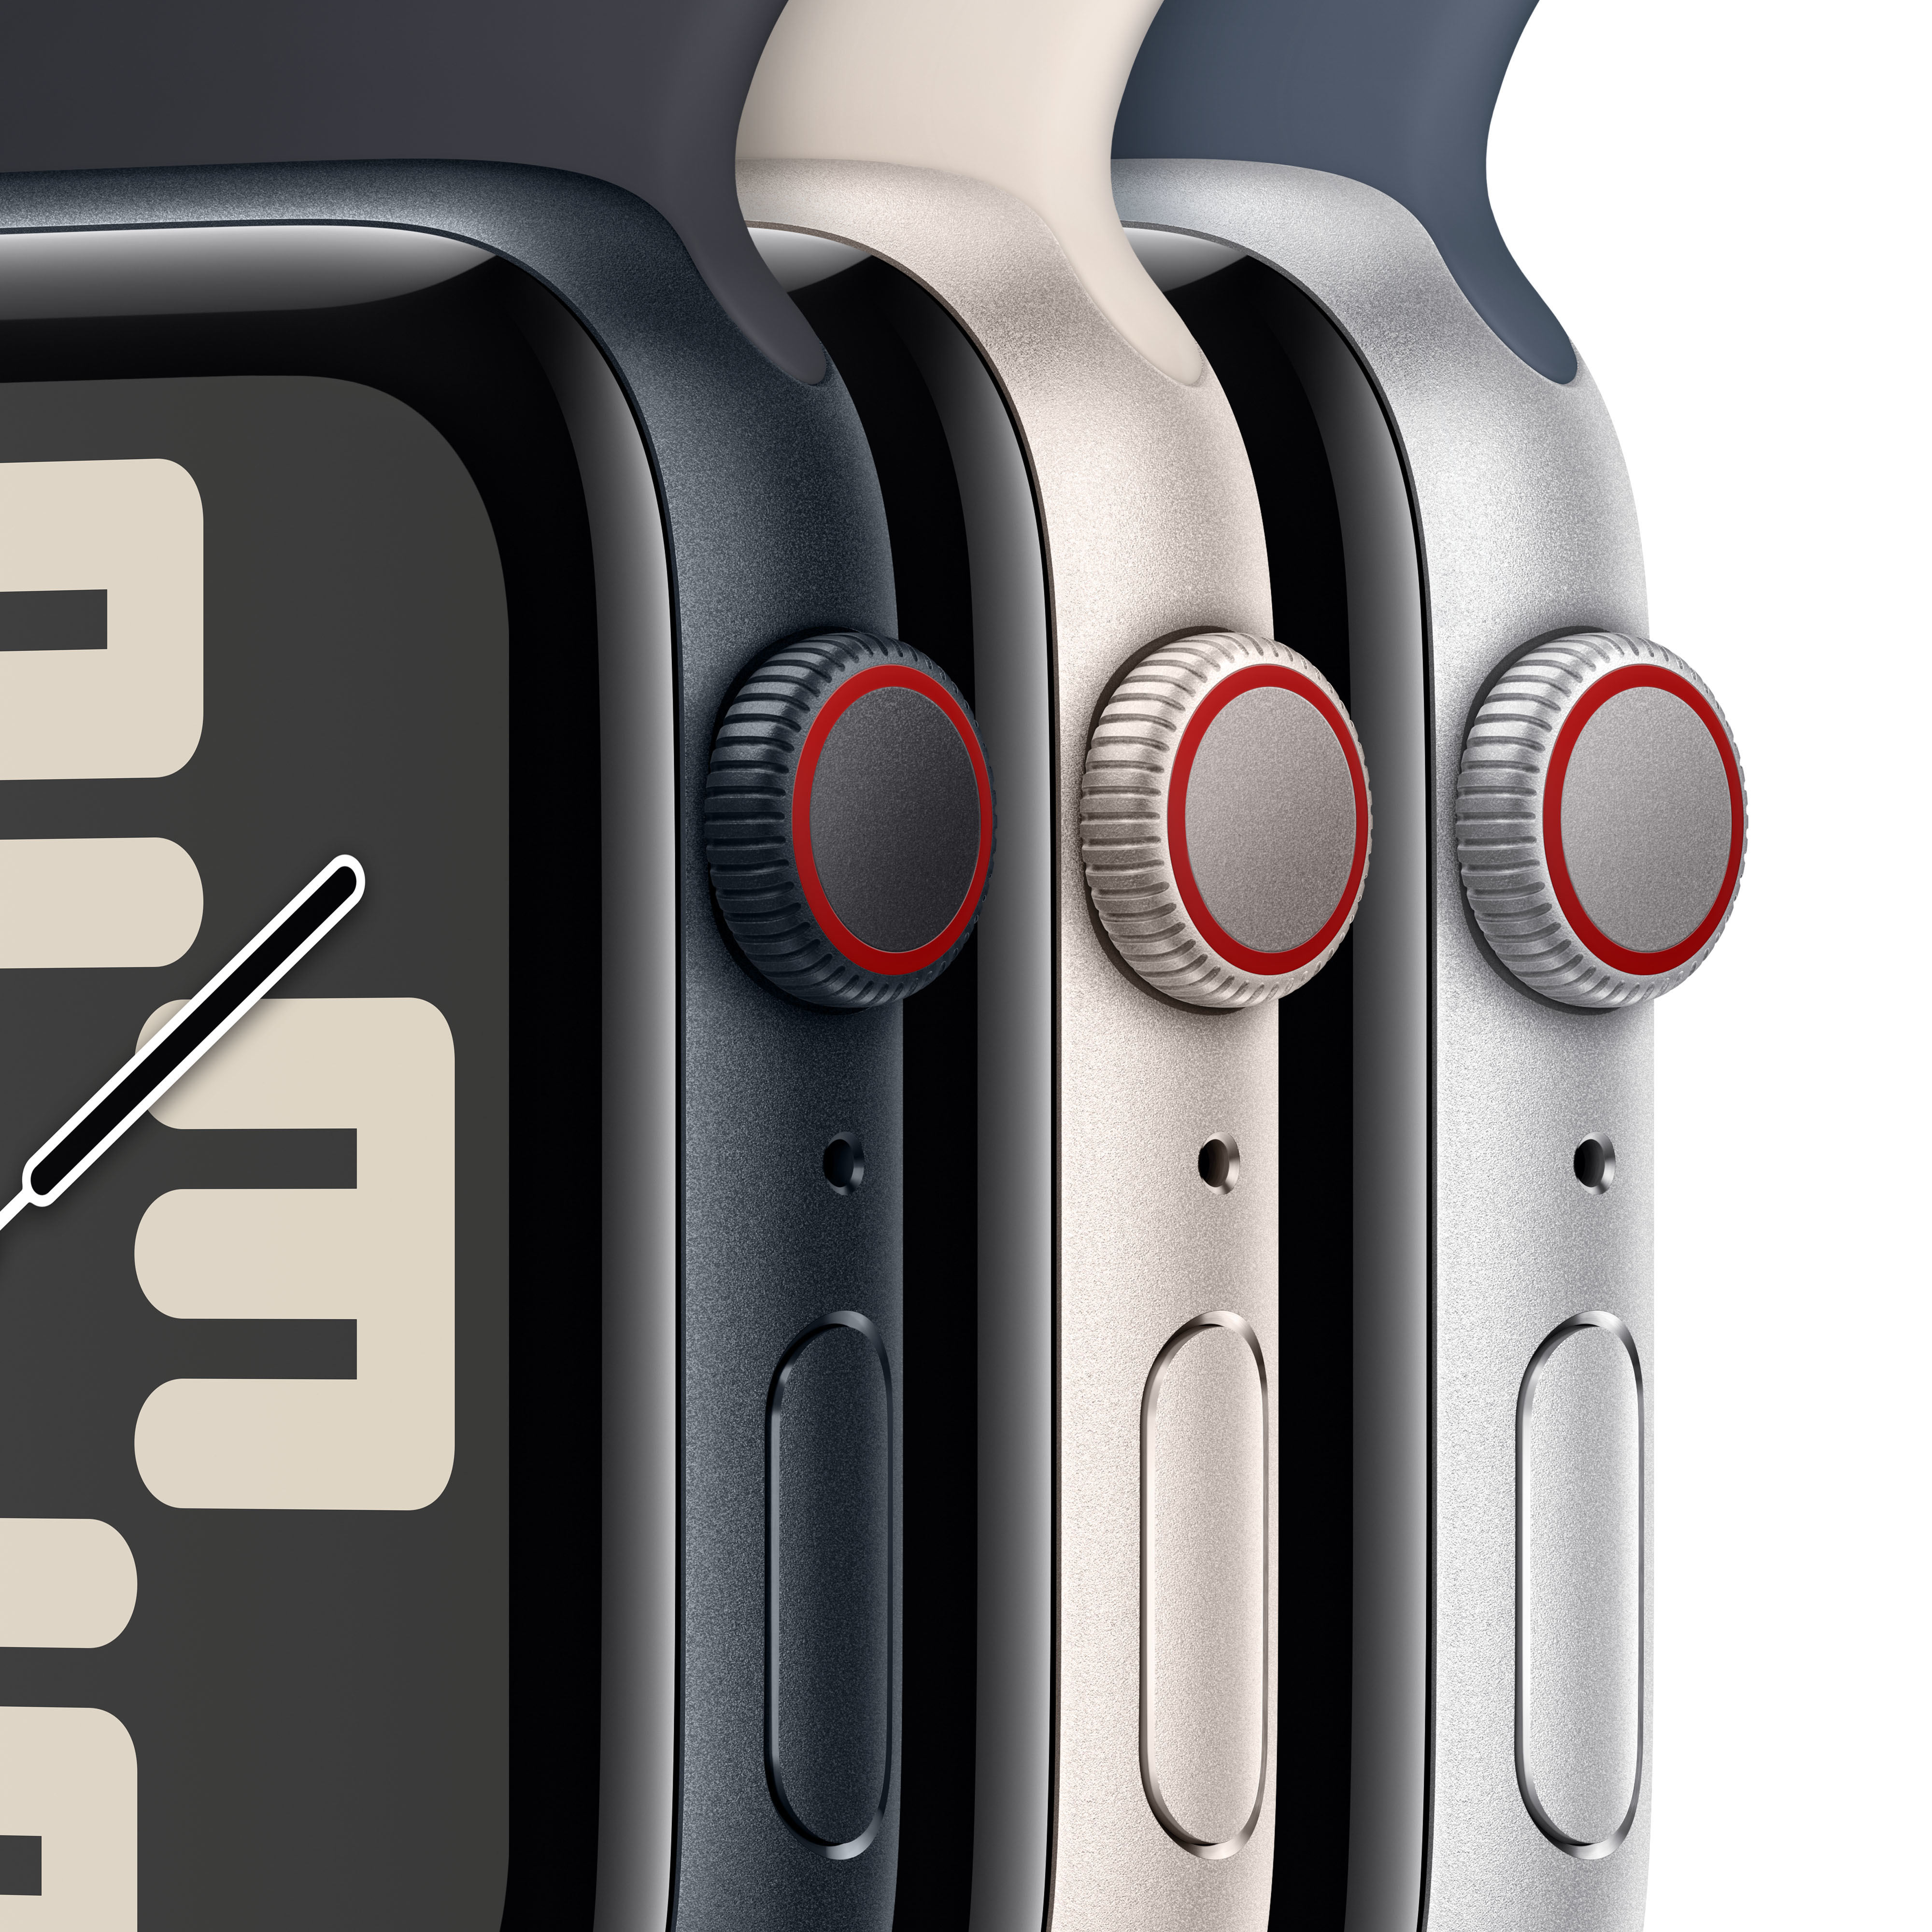 Apple - Smartwatch Apple Watch SE GPS + Cellular 40mm Starlight Aluminium Case com Starlight Sport Loop